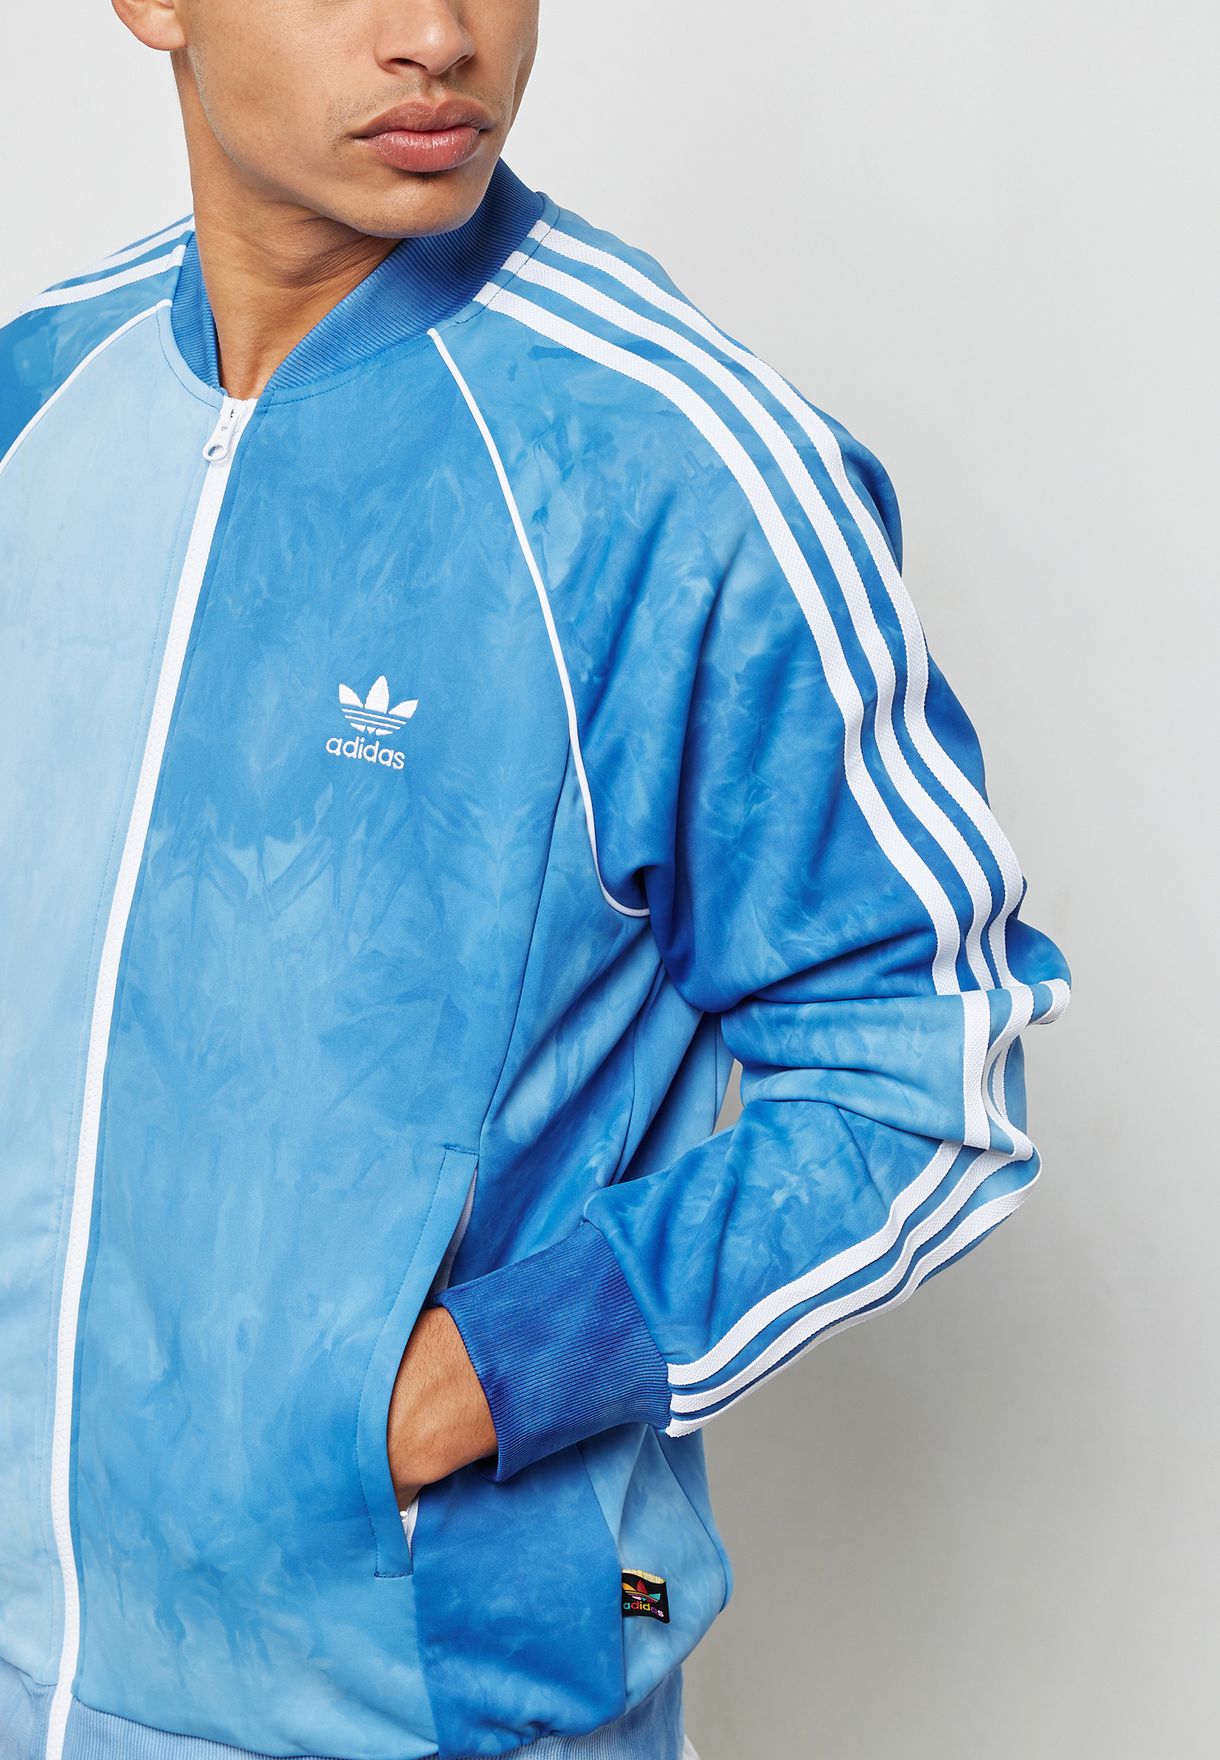 adidas pharrell williams jacket blue